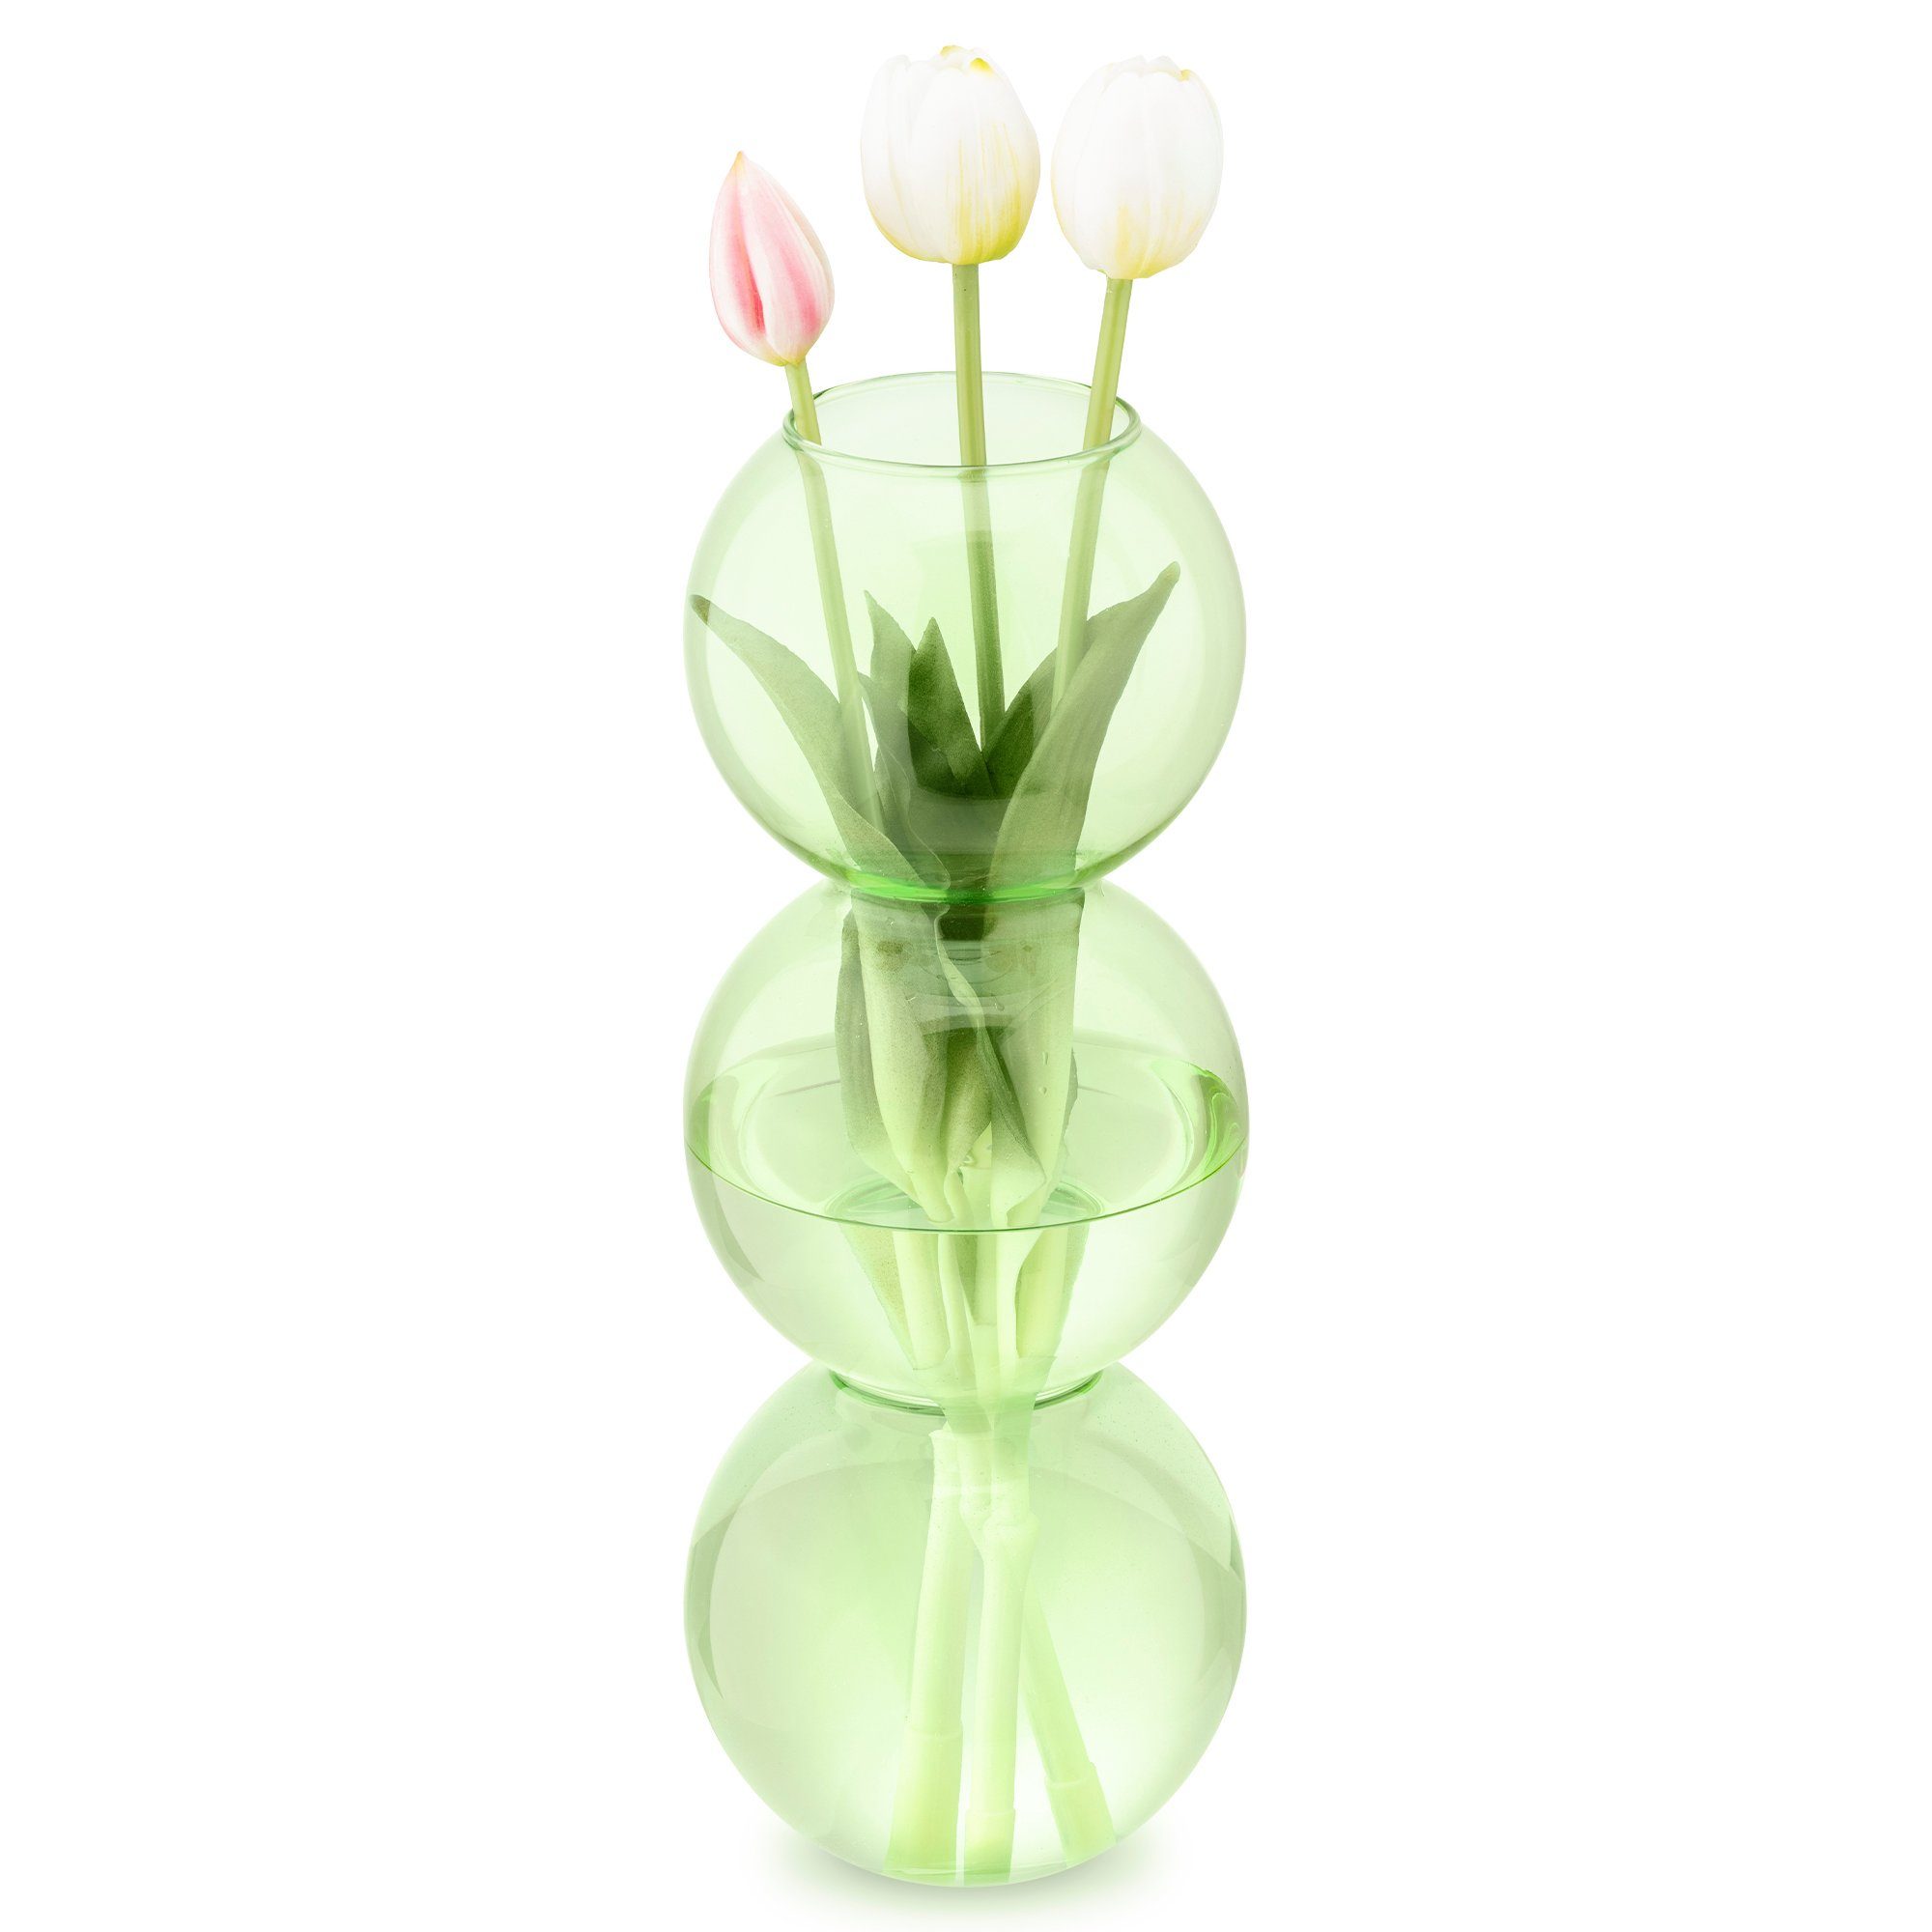 Navaris Dekovase Deko Vase modern grün - Wohnzimmer Blumenvase - Glasvase Blasenform